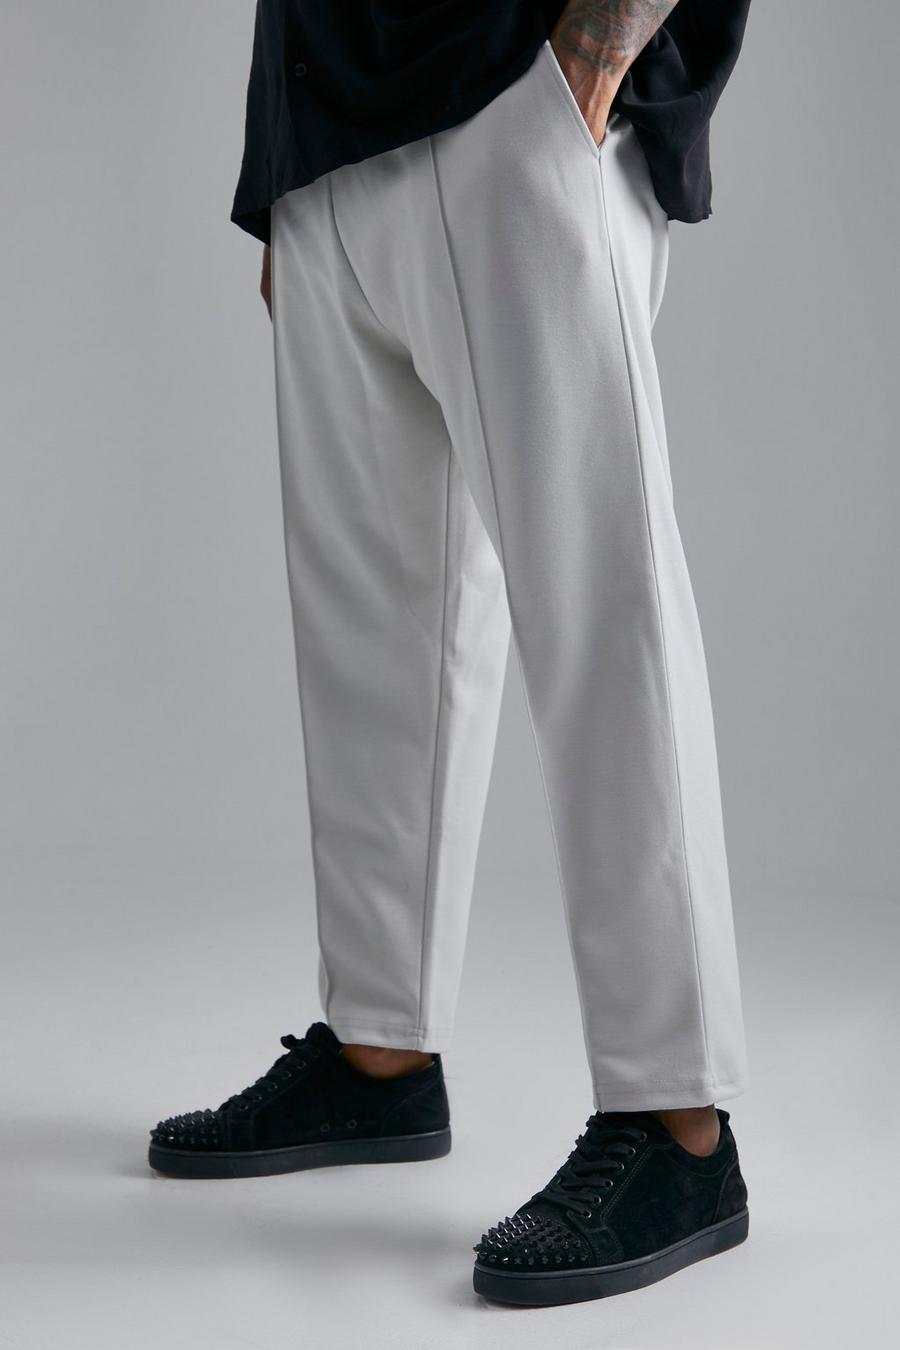 Pantalón deportivo Plus pesquero ajustado con alforza, Dark grey gris